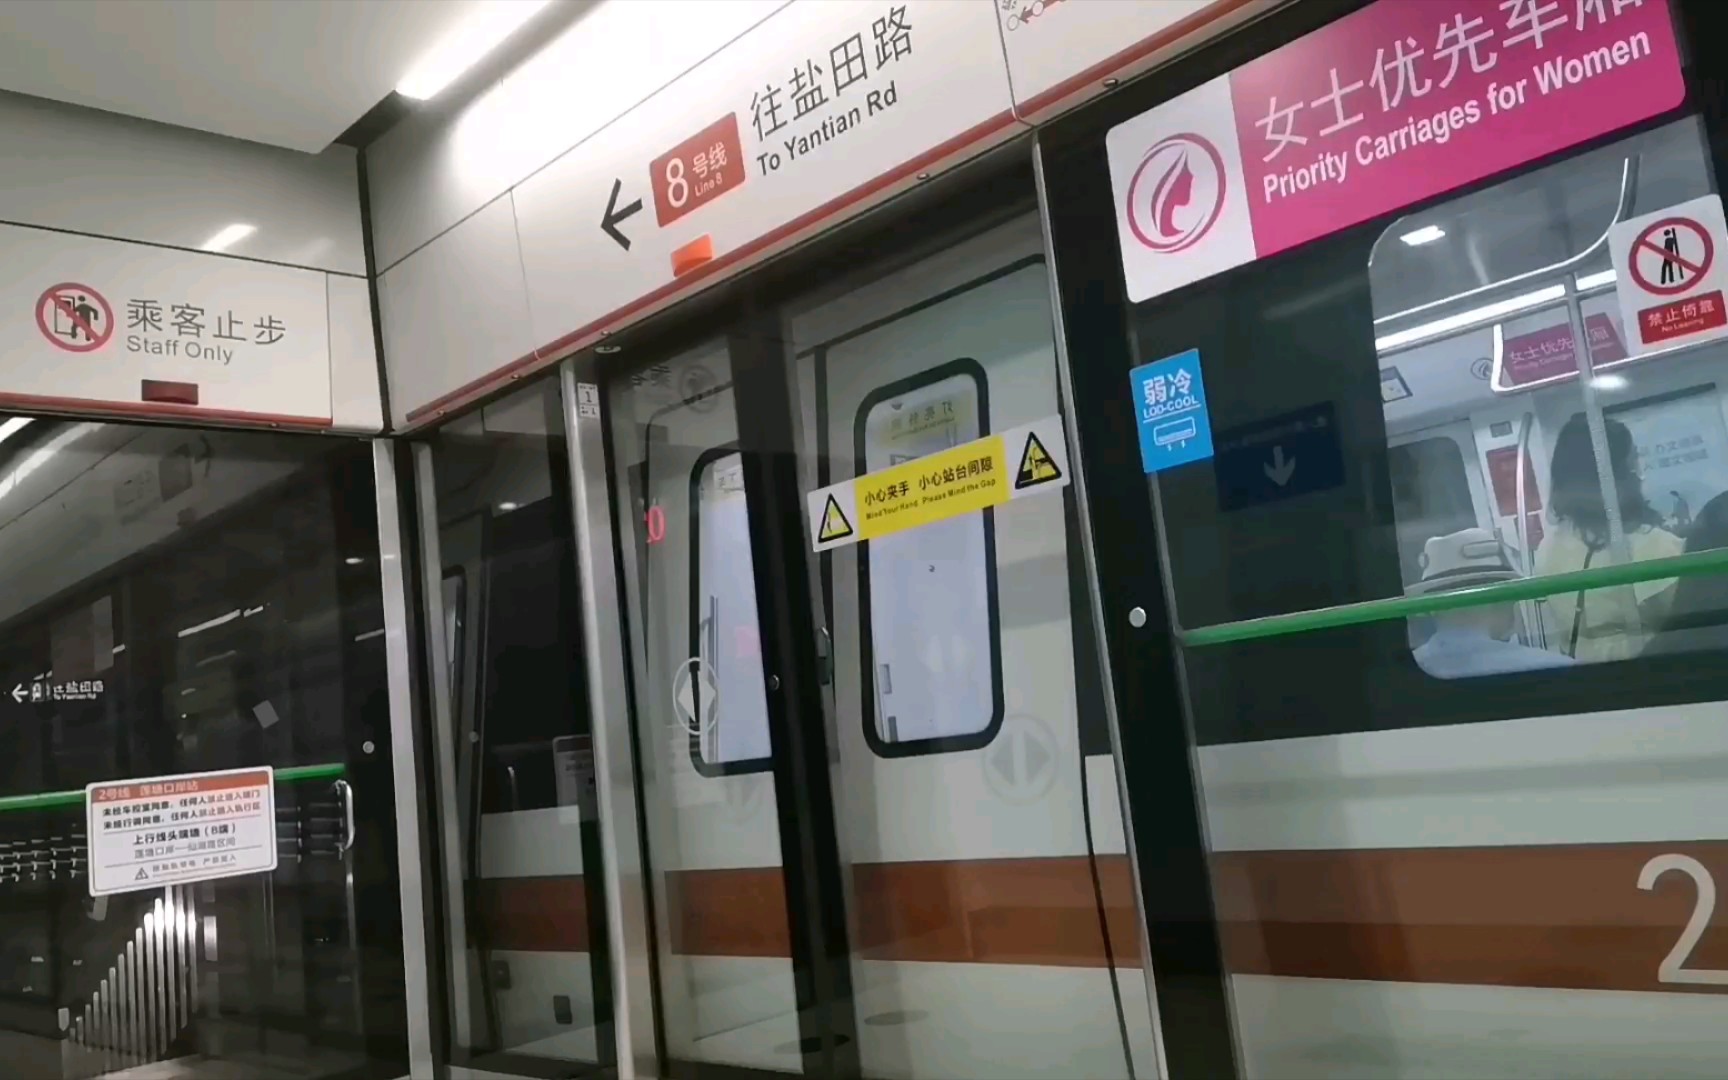 深圳地铁2号线278图片